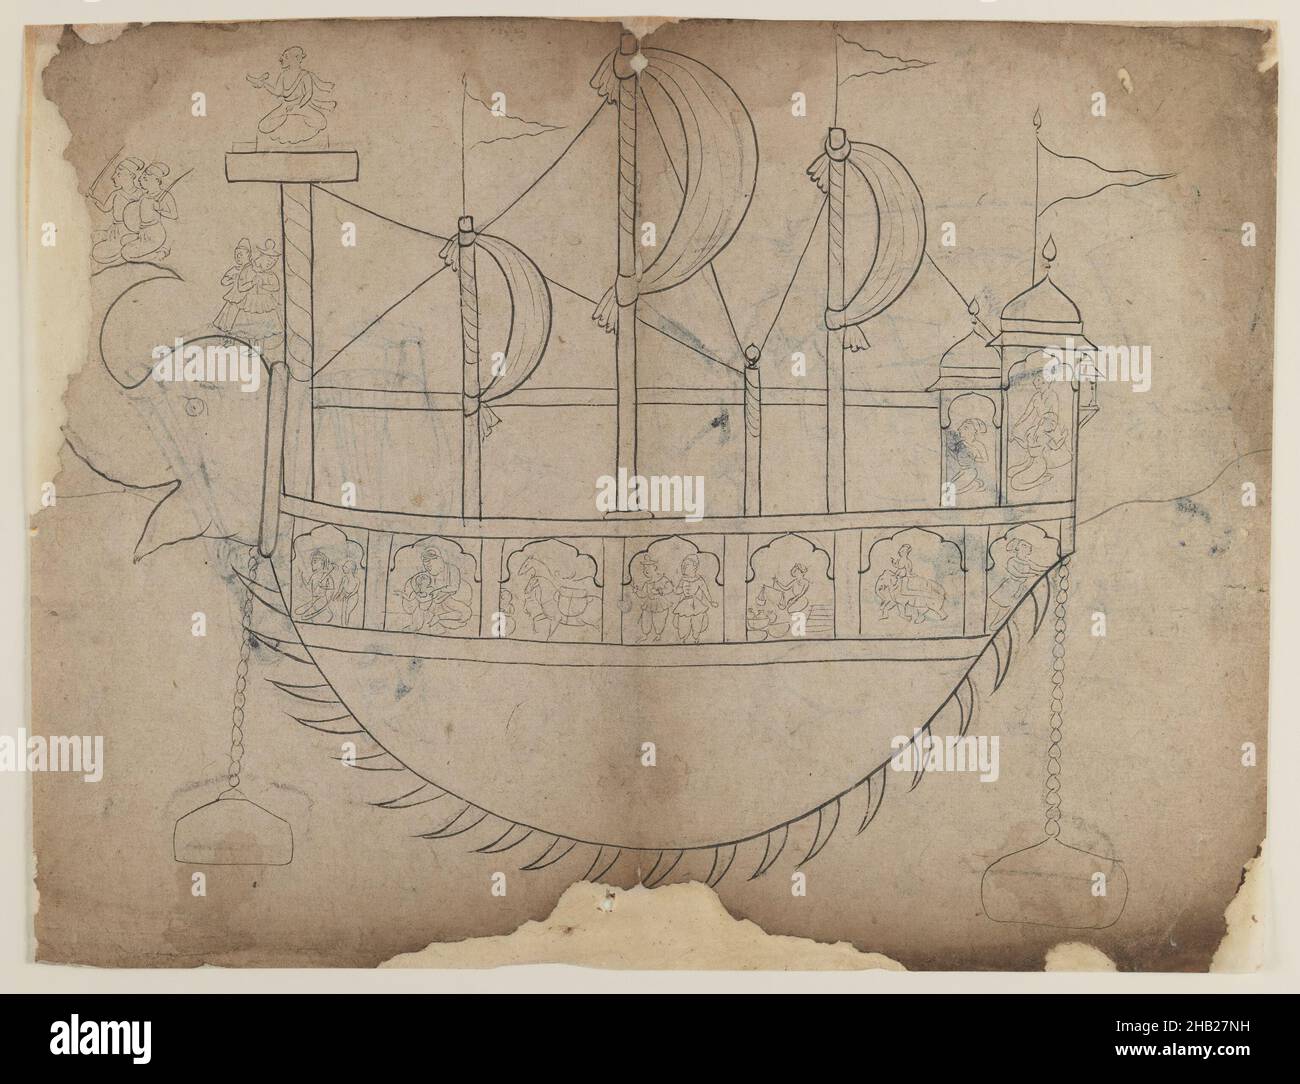 Disegno di linea di una barca fantasiosa, indiana, inchiostro e carbone su carta, 19th secolo, foglio: 8 5/8 x 11 5/8 in., 21,9 x 29,5 cm Foto Stock